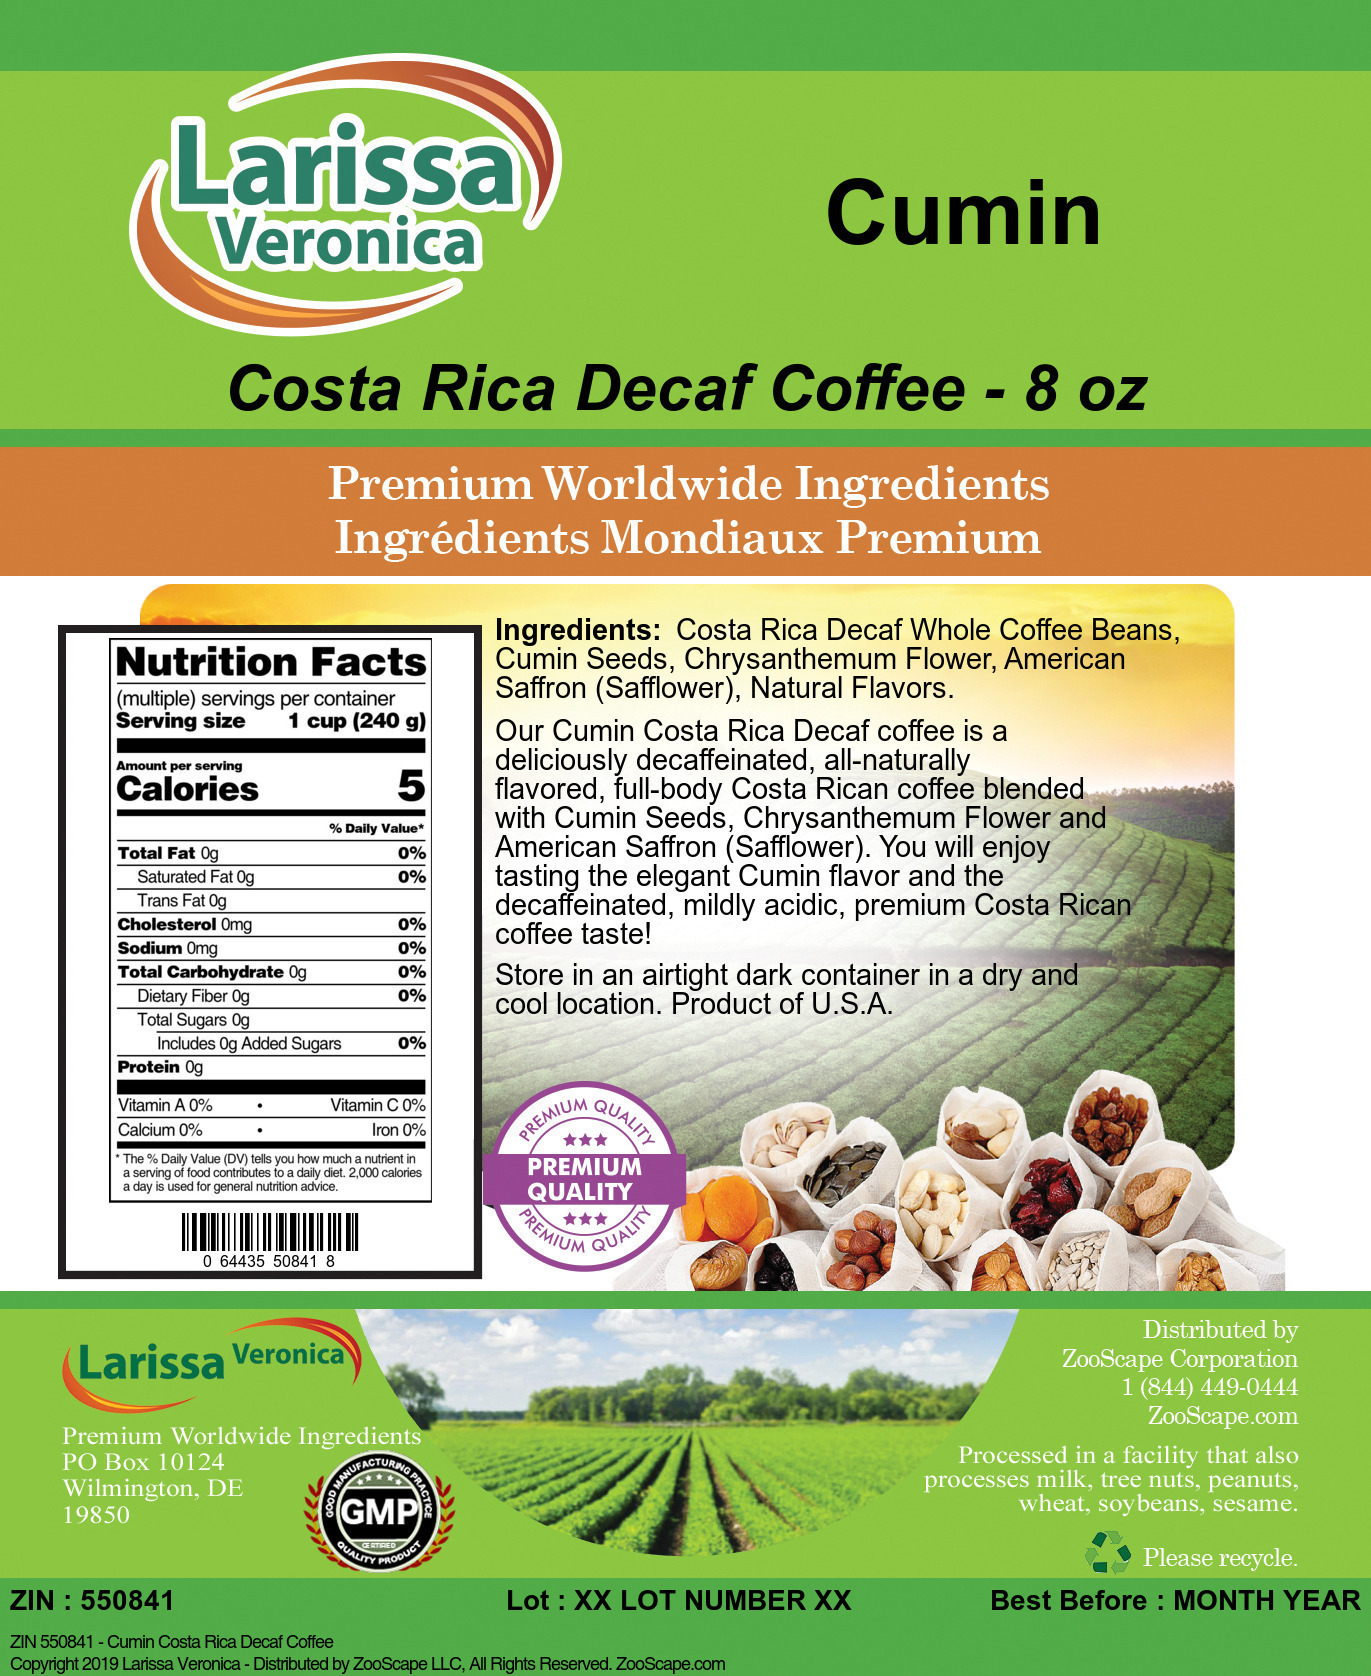 Cumin Costa Rica Decaf Coffee - Label